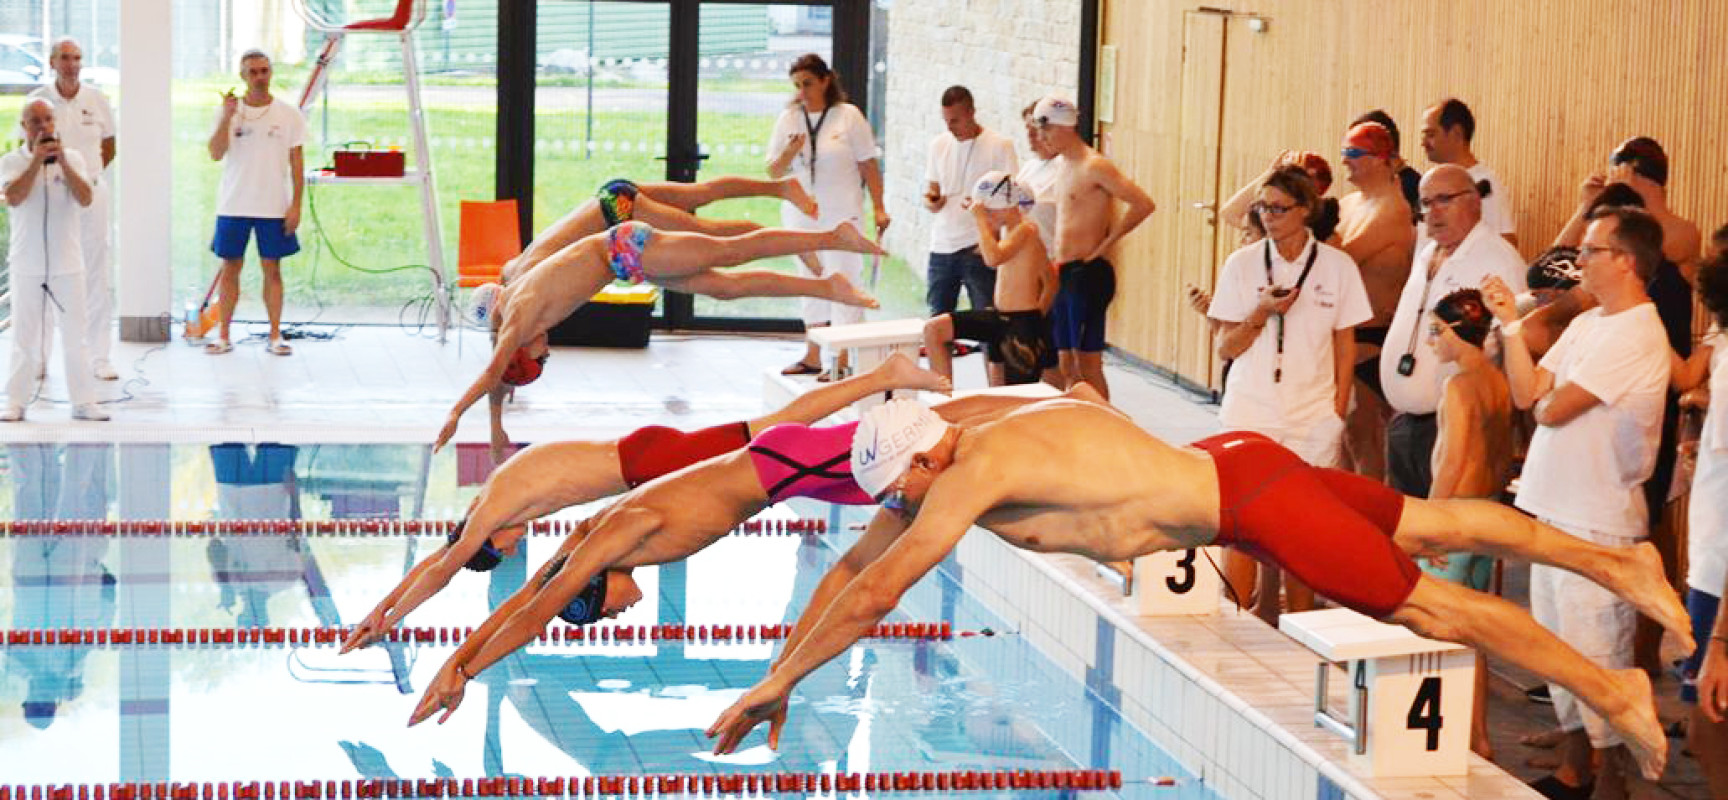 Championnat Interclubs de natation, AQUASUD sera exceptionnellement fermée au public le samedi 19 novembre